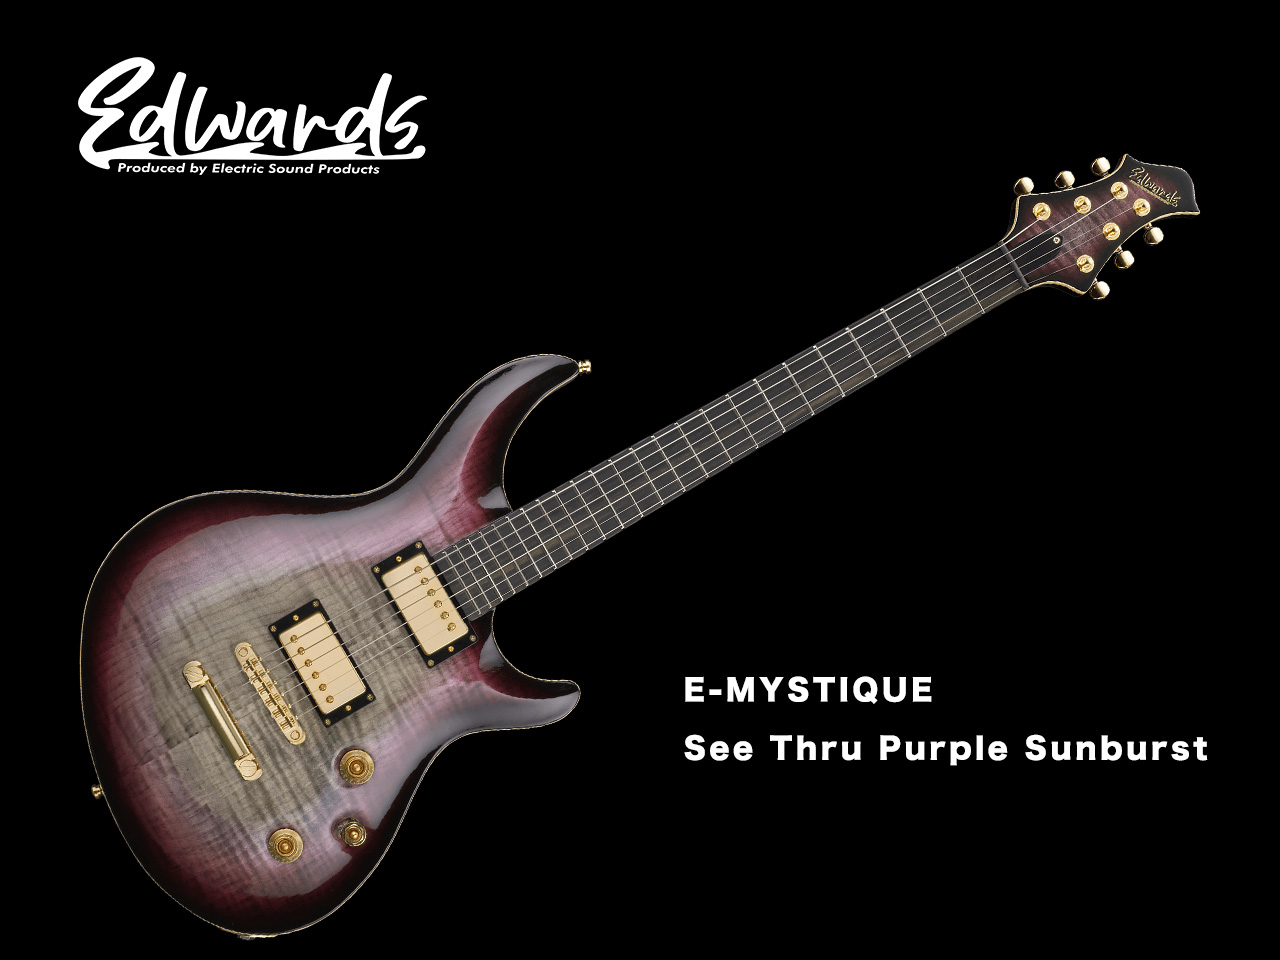 【受注生産】EDWARDS(エドワーズ) E-MYSTIQUE / See Thru Purple Sunburst